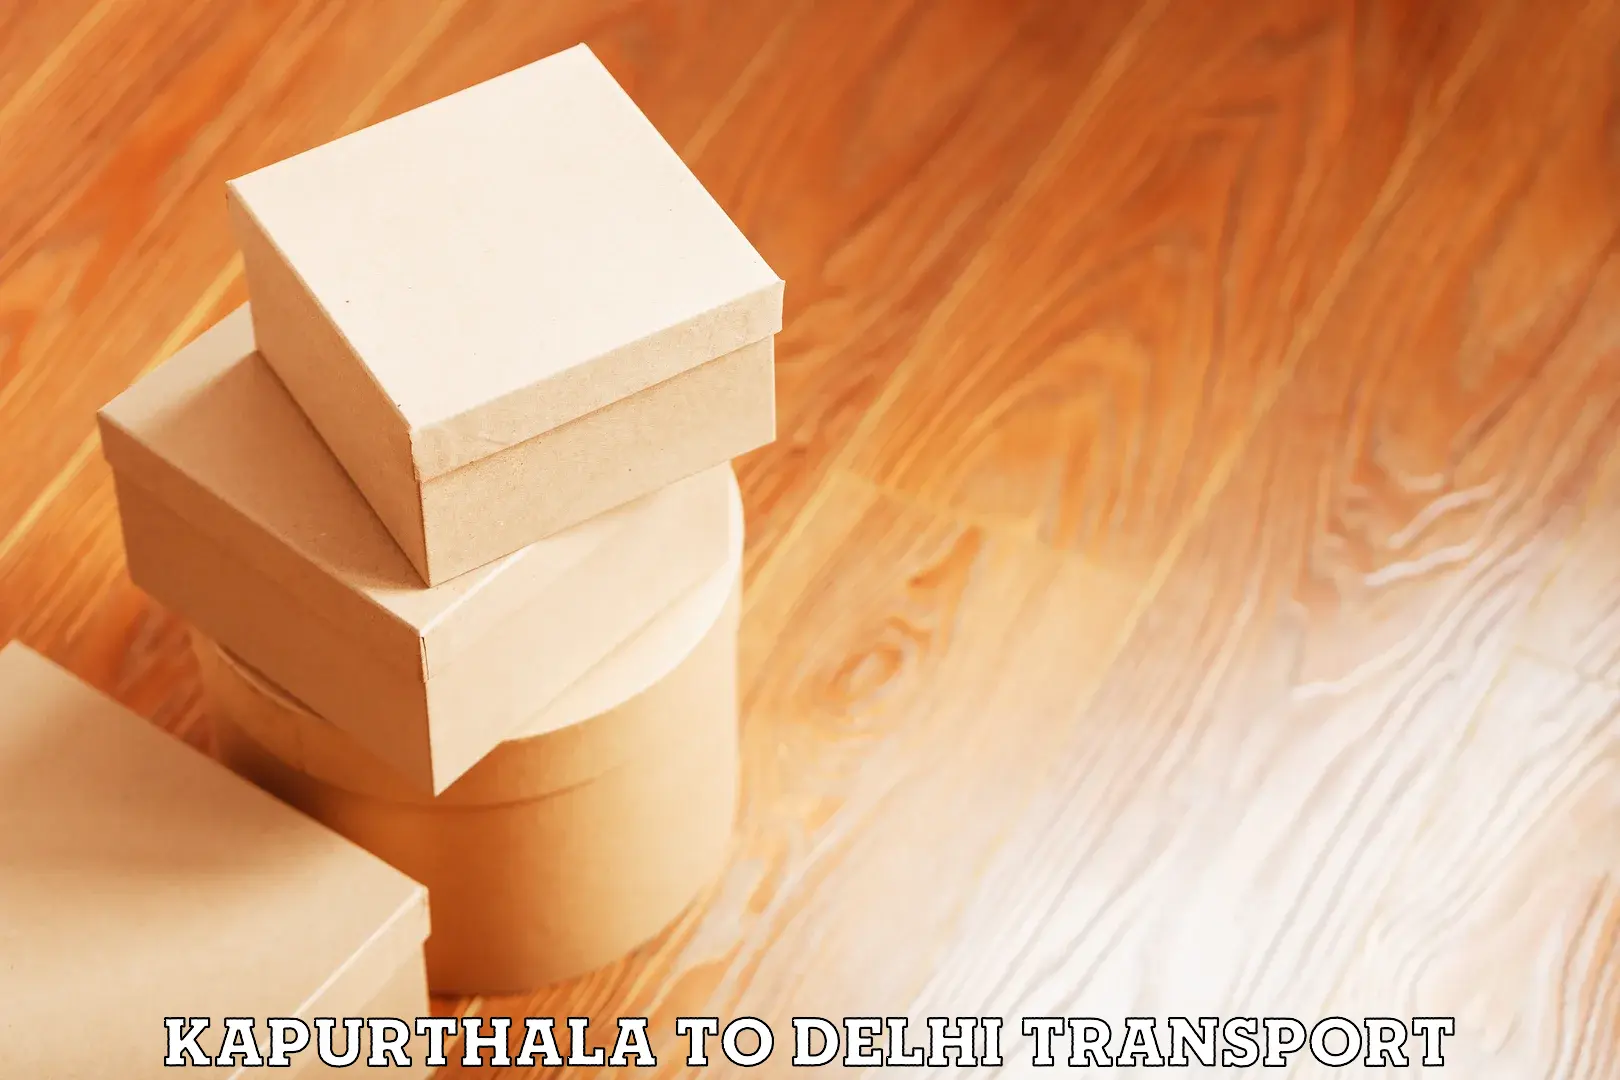 Daily parcel service transport Kapurthala to Guru Gobind Singh Indraprastha University New Delhi